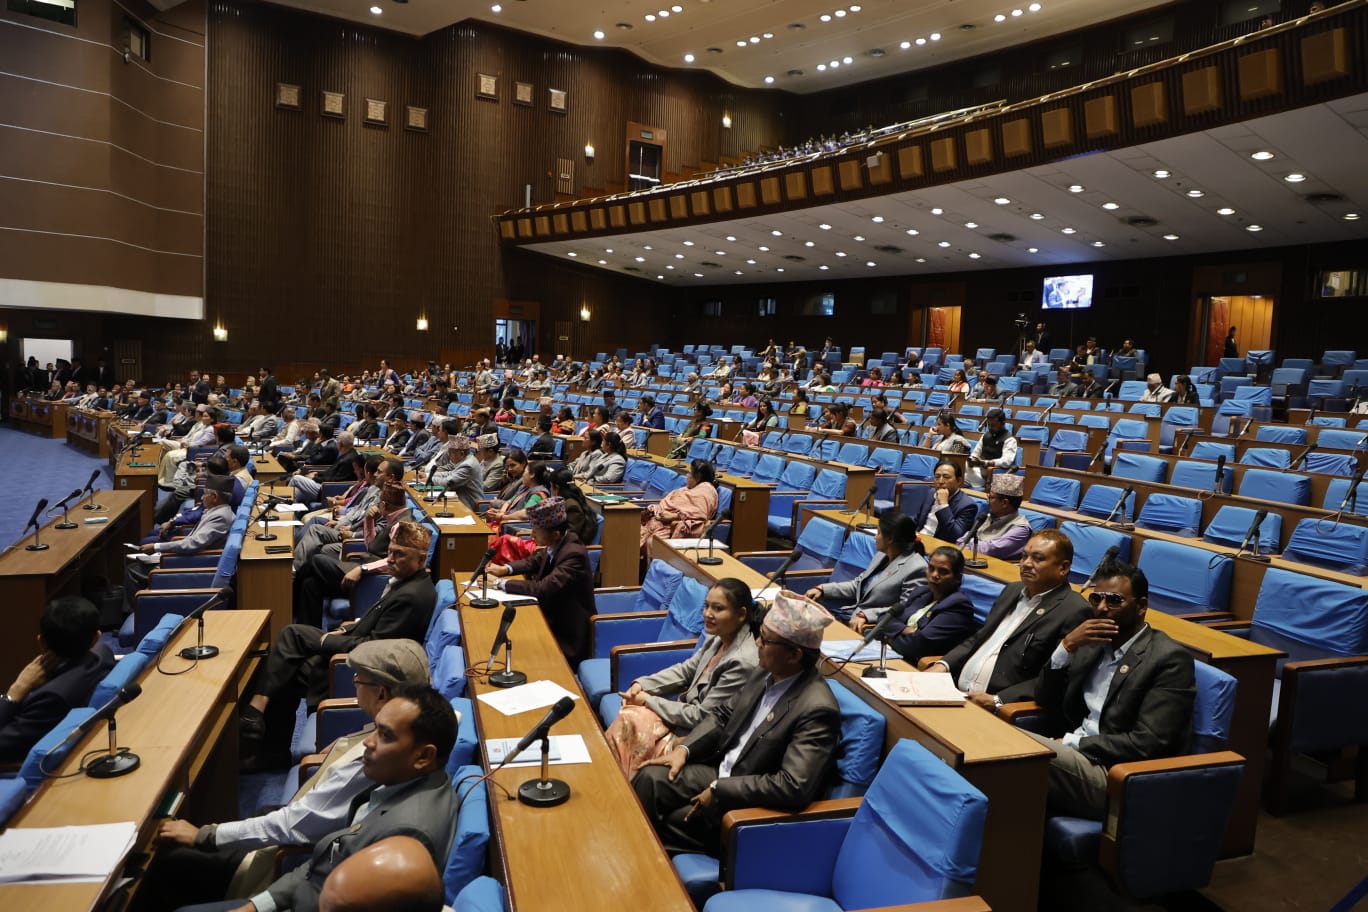 प्रतिनिधिसभा बैठक सुरु, प्रधानमन्त्रीले संसदमा उठेका प्रश्नको जवाफ दिँदै (तस्बिरहरु)